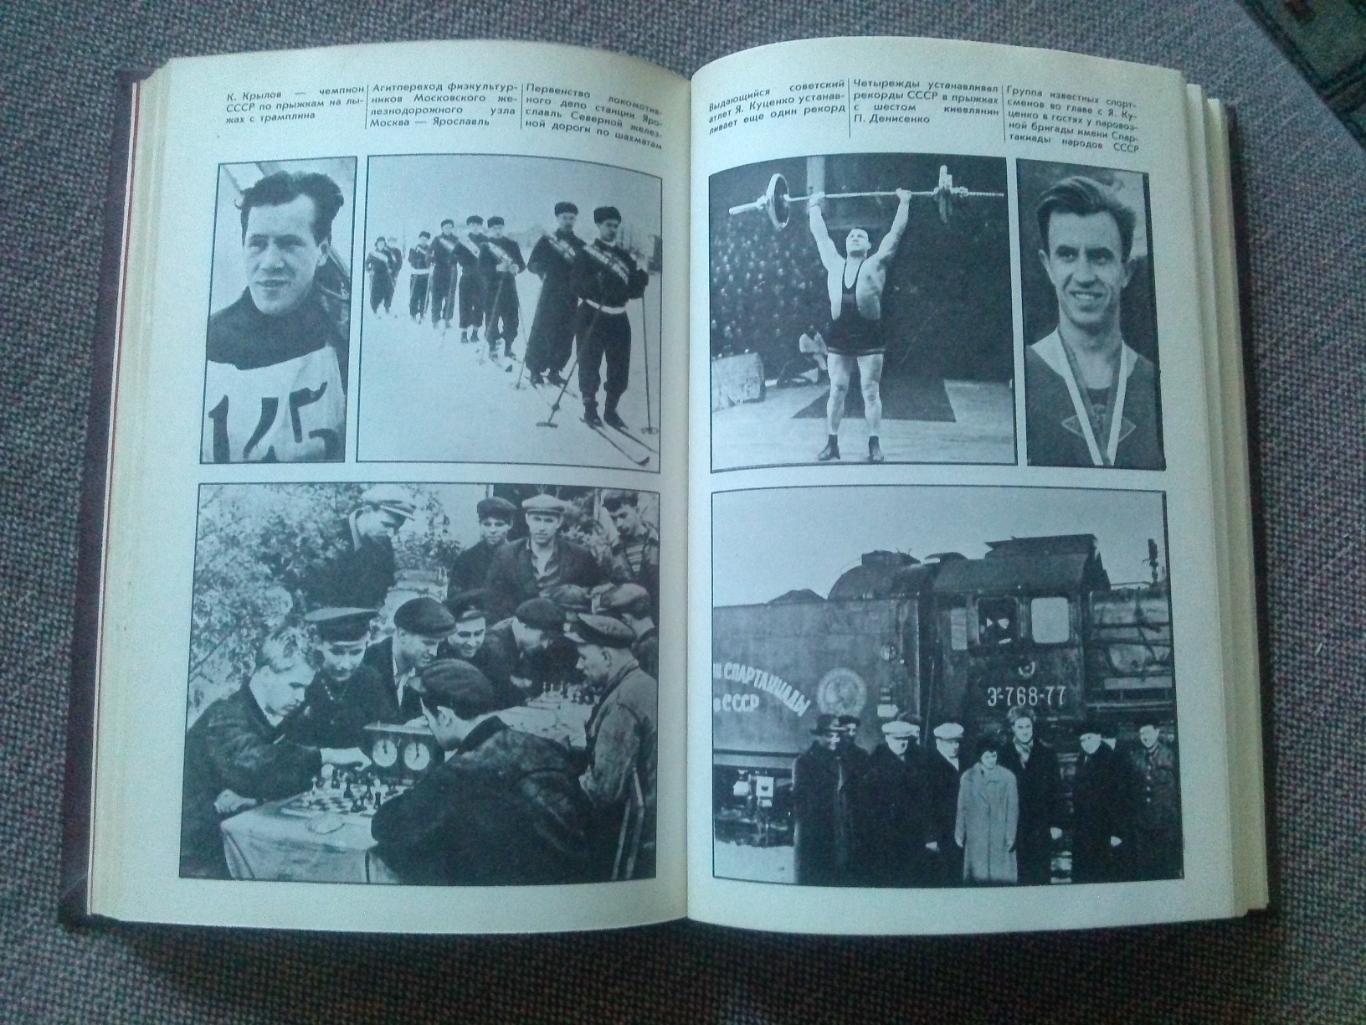 Спортобществу Локомотив - 50 лет 1988 г.ФиССпорт Футбол Спортобщество 7